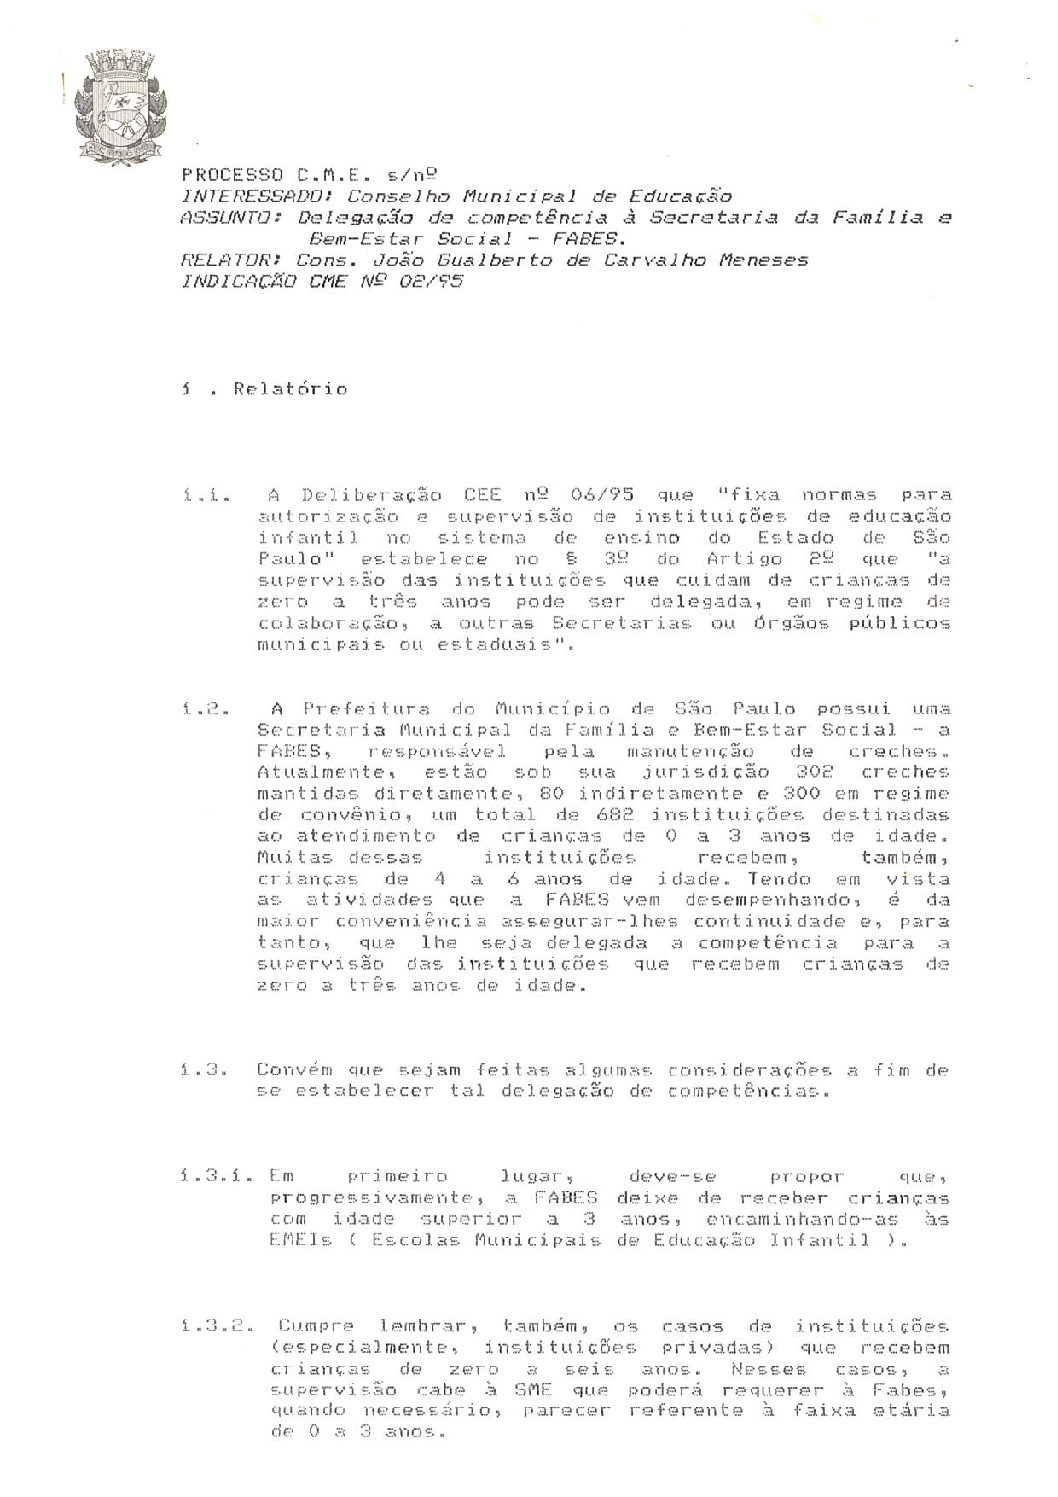 Indicação CME nº 02/1995 - Delegação de competência à Secretaria da Família e Bem-Estar Social - FABES